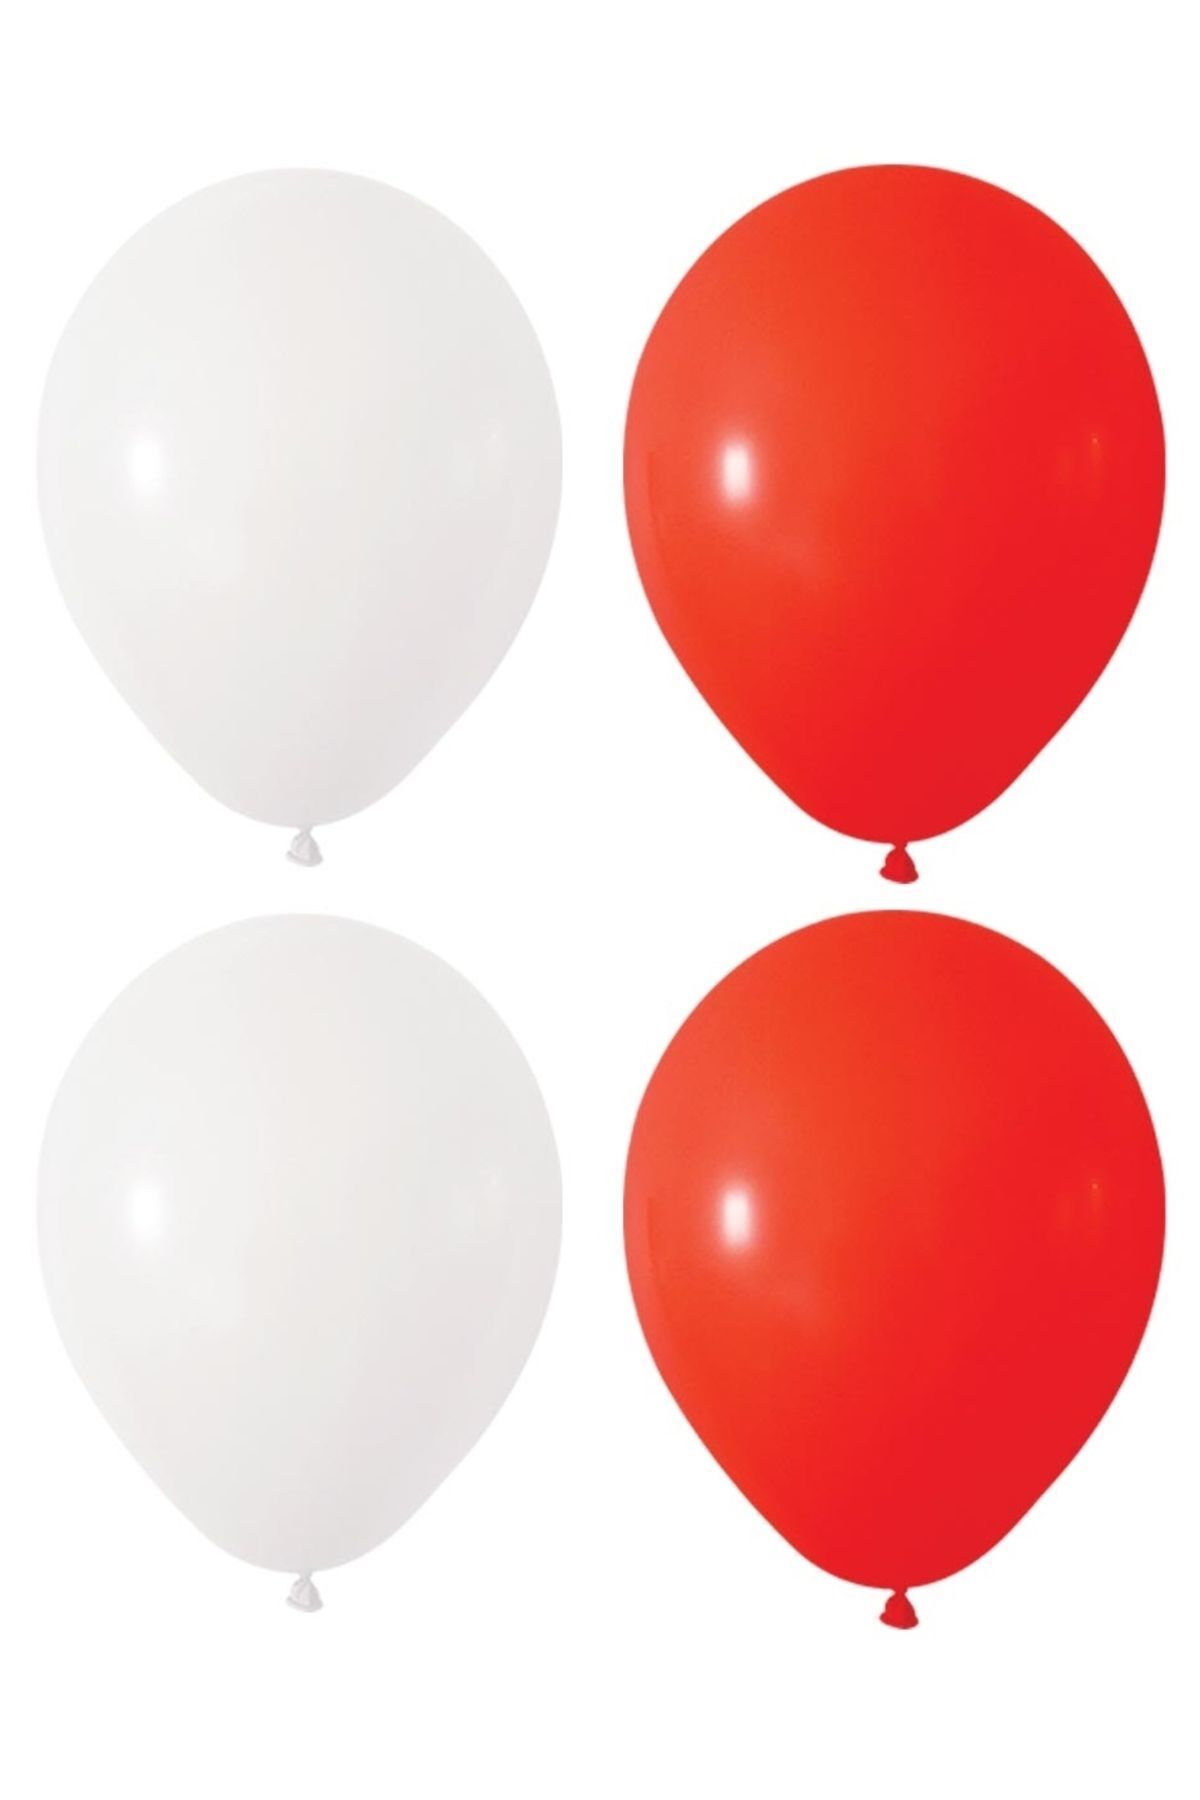 HKNYS Kırmızı Beyaz Renk Pastel Lateks Balon 50 Adet +Balon Zinciri Hediye